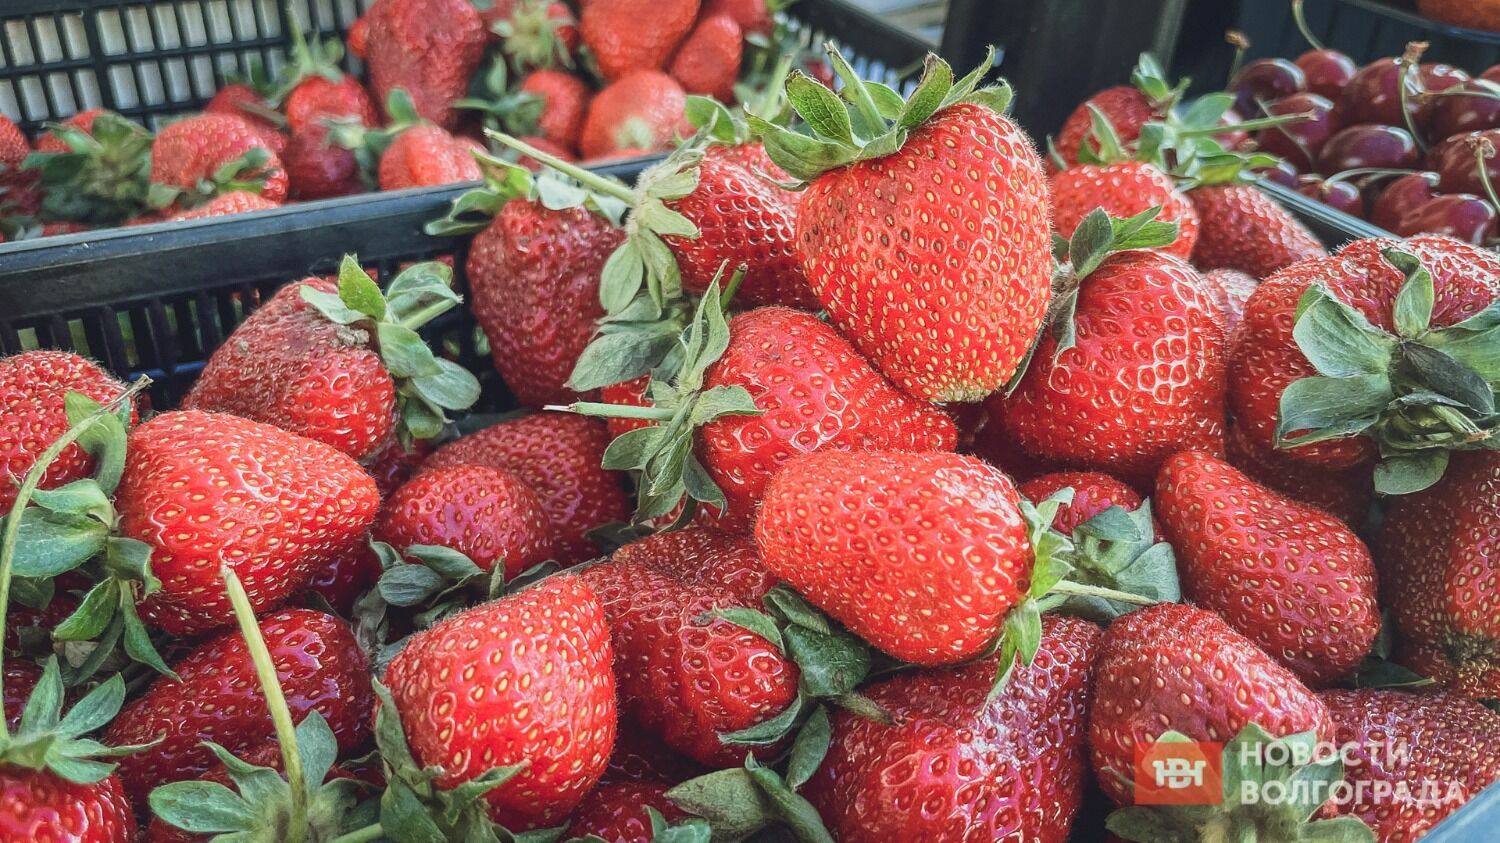 Хотя клубники и много, местной ягоды на рынках Волгограда пока не сыщешь